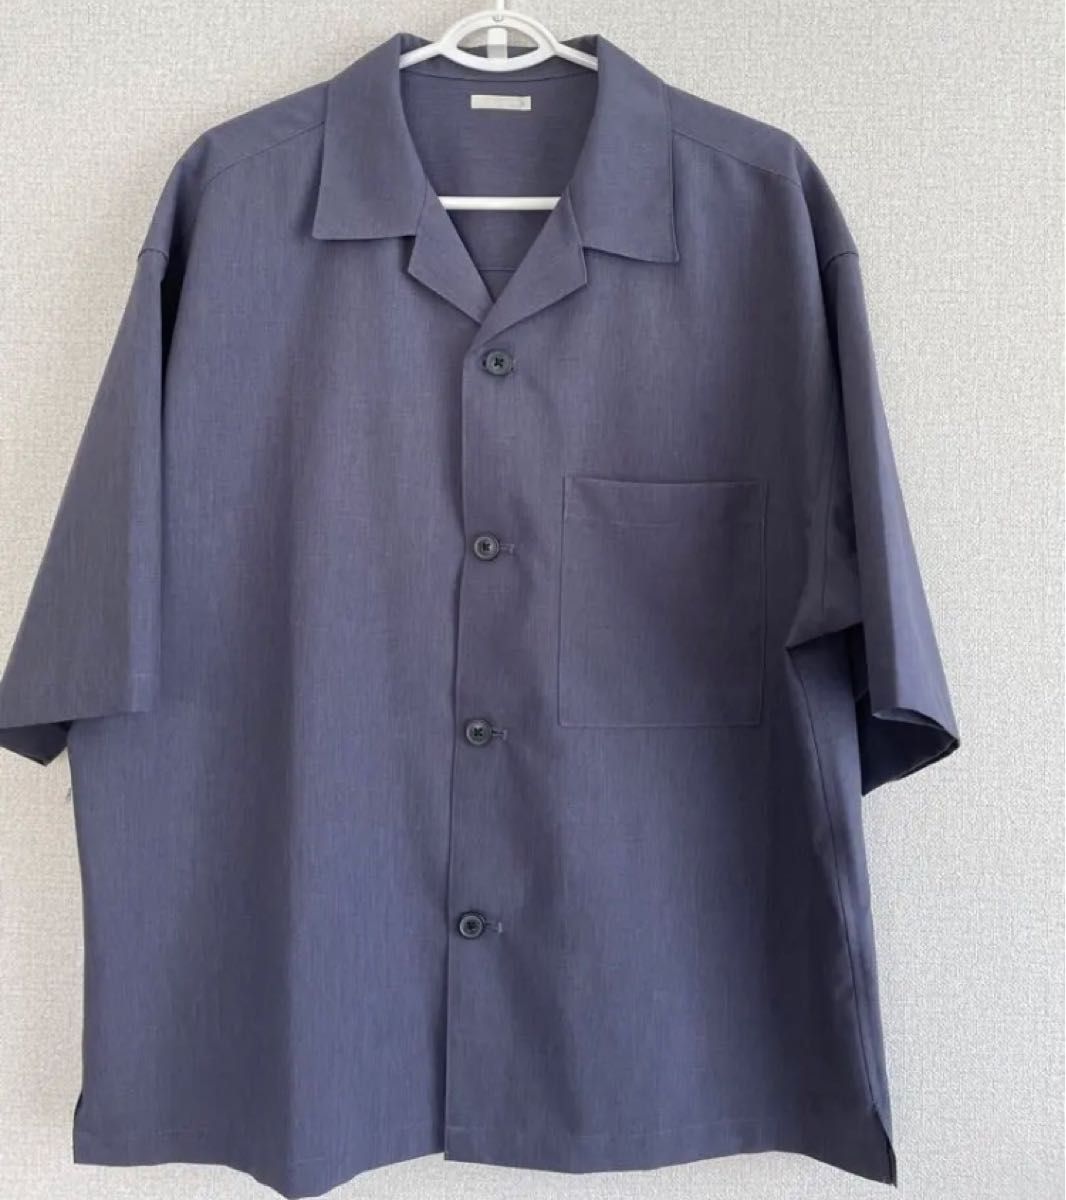 GU ドライワイドフィットオープンカラーシャツ(5分袖) メンズ M ネイビー リラックス